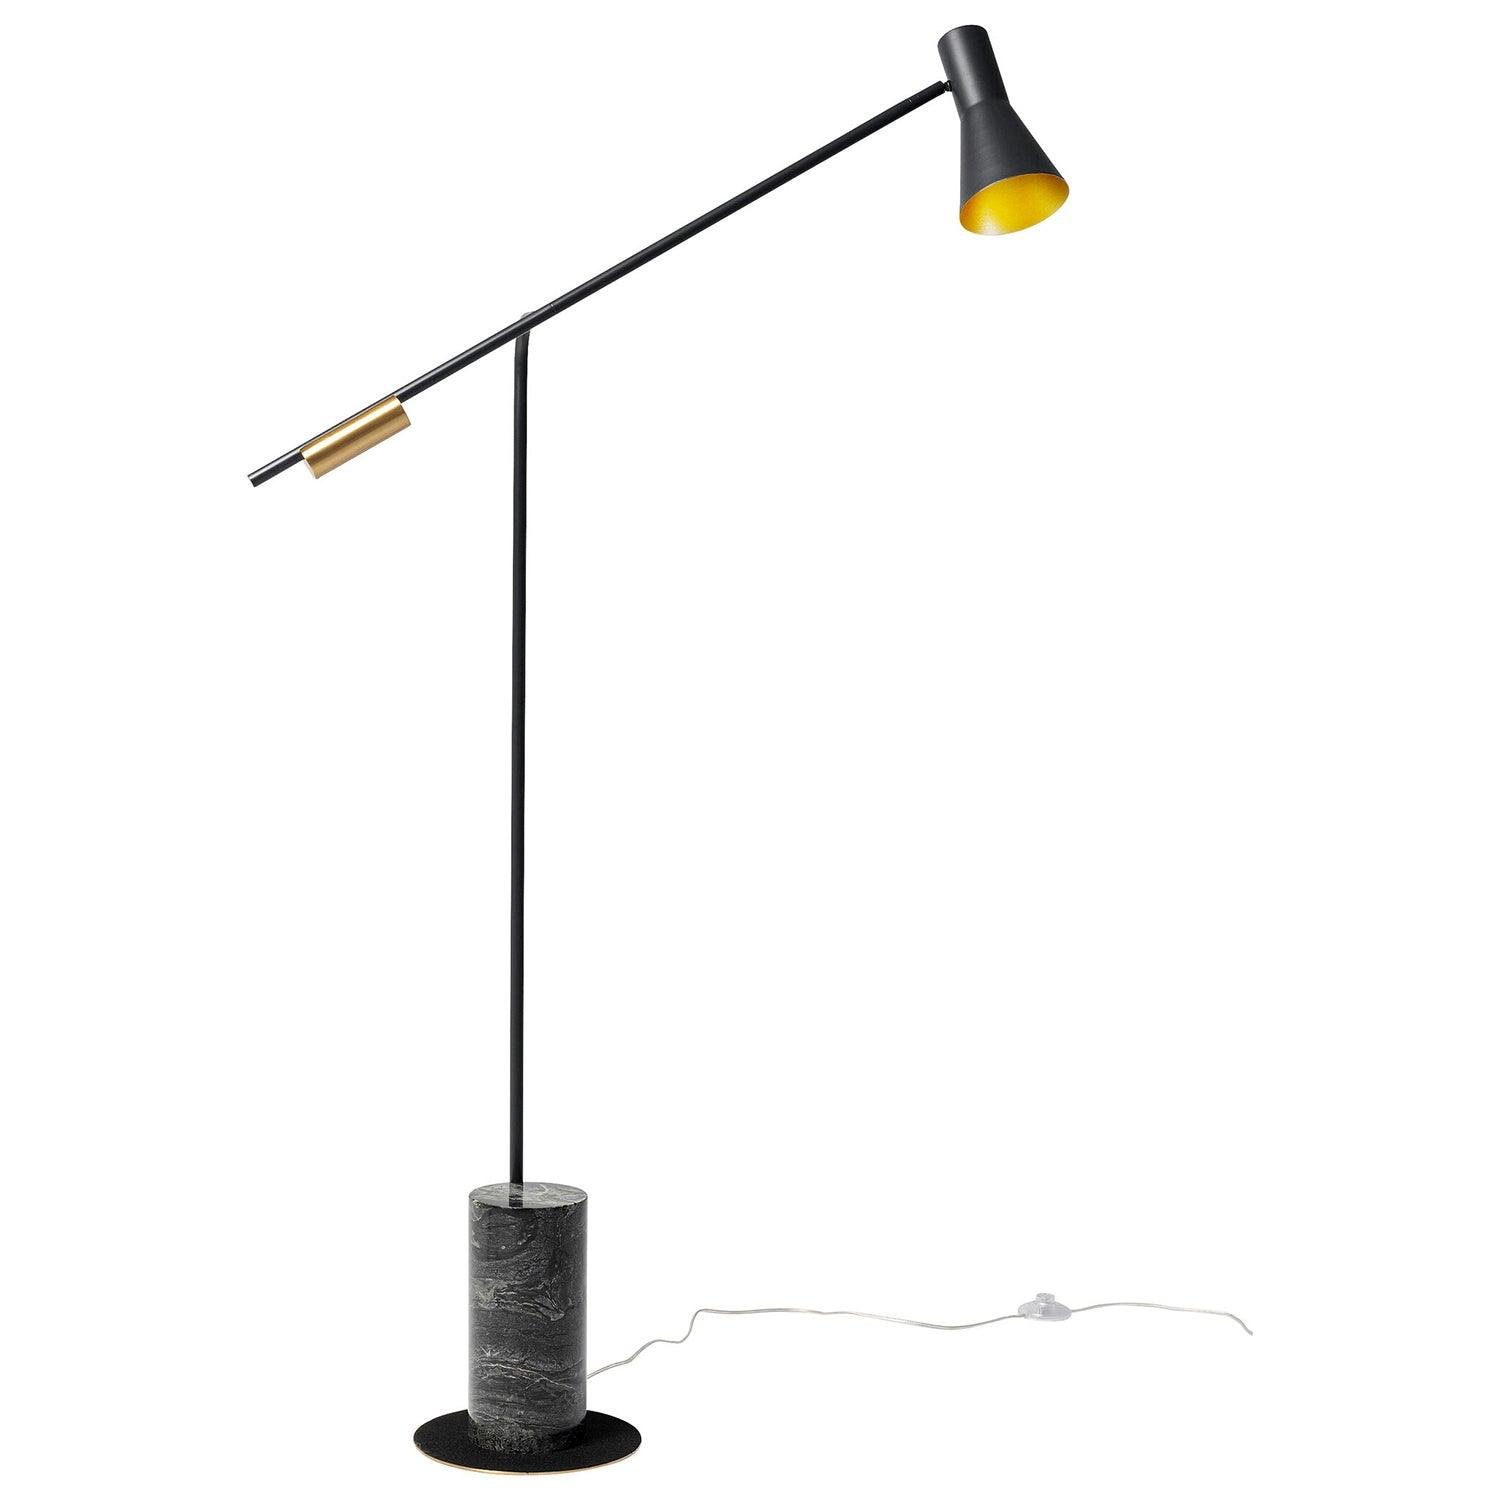 Black+Black Marble Metro Floor Lamp with UK plug, measuring ∅ 43.3″ x H 66.9″ (Dia 110cm x H 170cm)